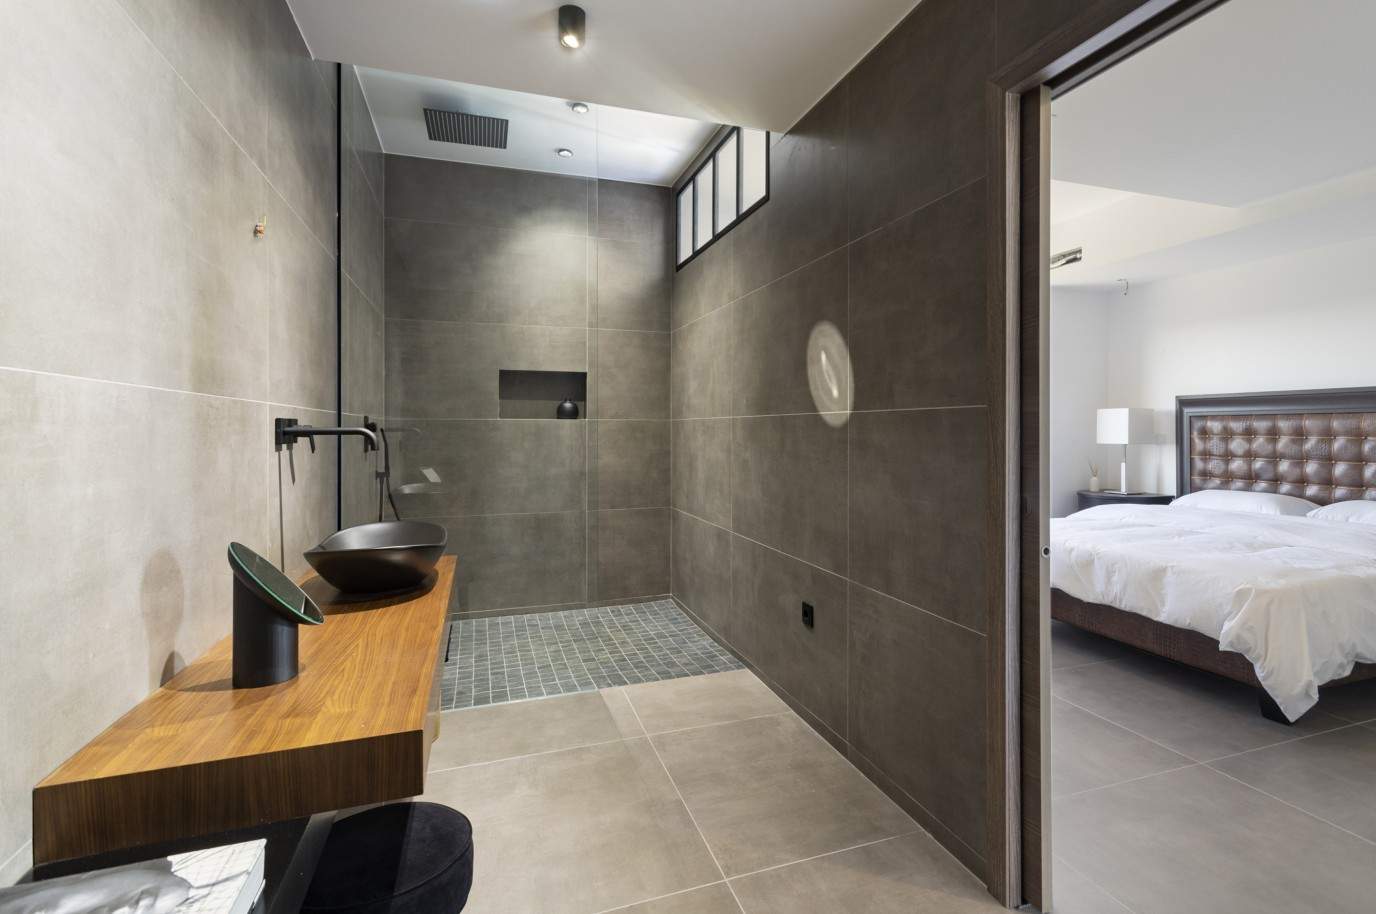 3 Bedroom Villa, with swimming pool, for sale in Santa Barbara de Nexe, Algarve_213414